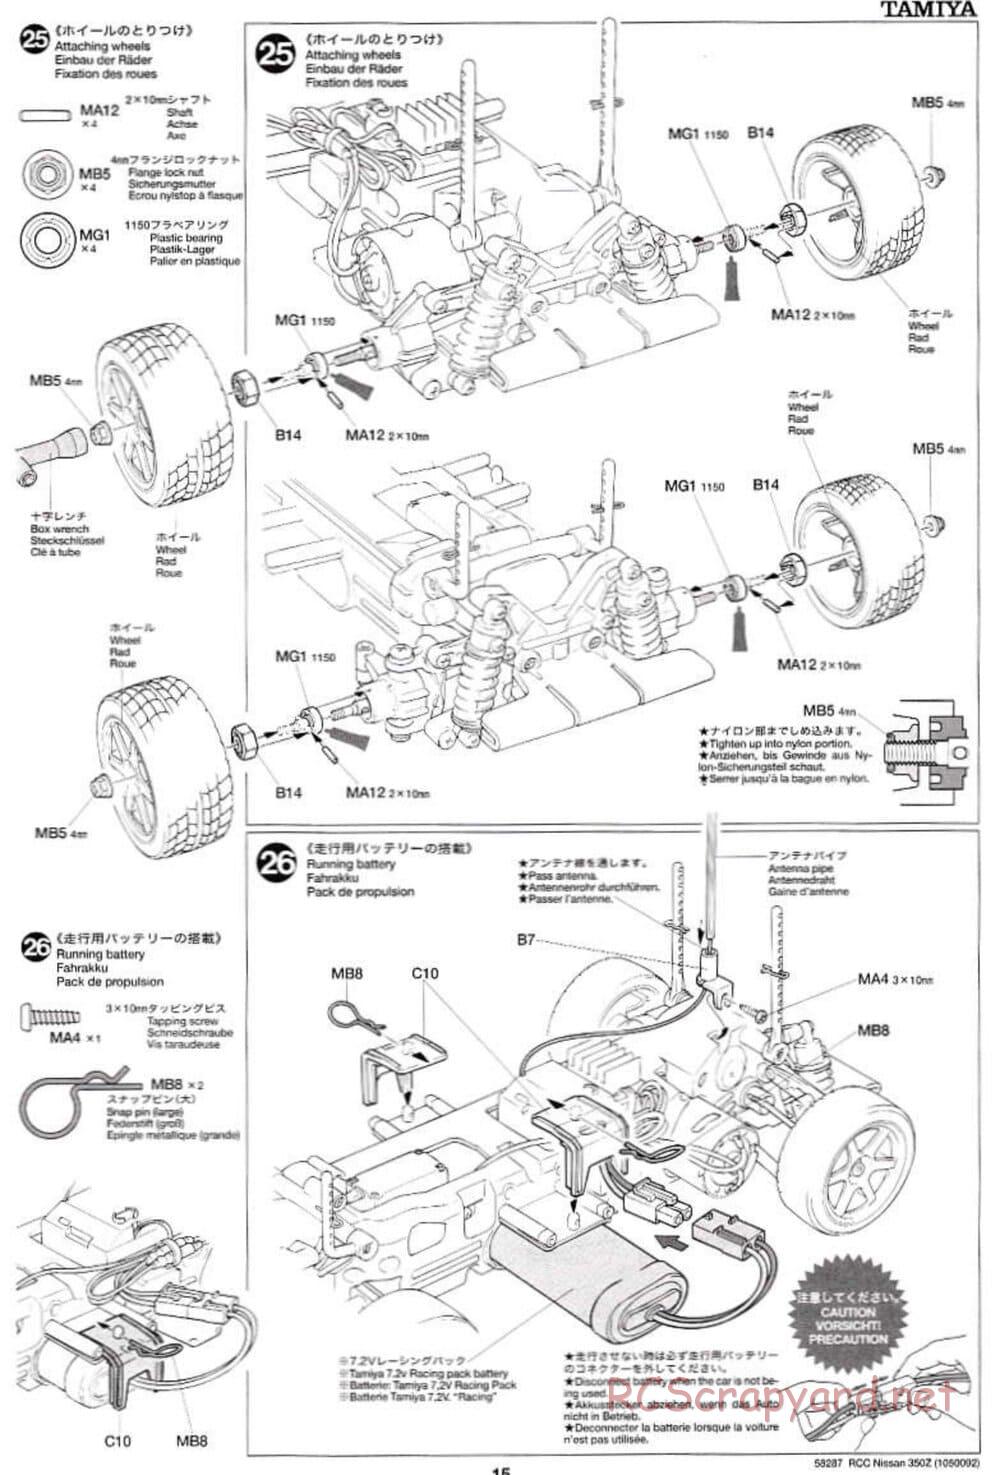 Tamiya - Nissan 350Z - TL-01 Chassis - Manual - Page 15